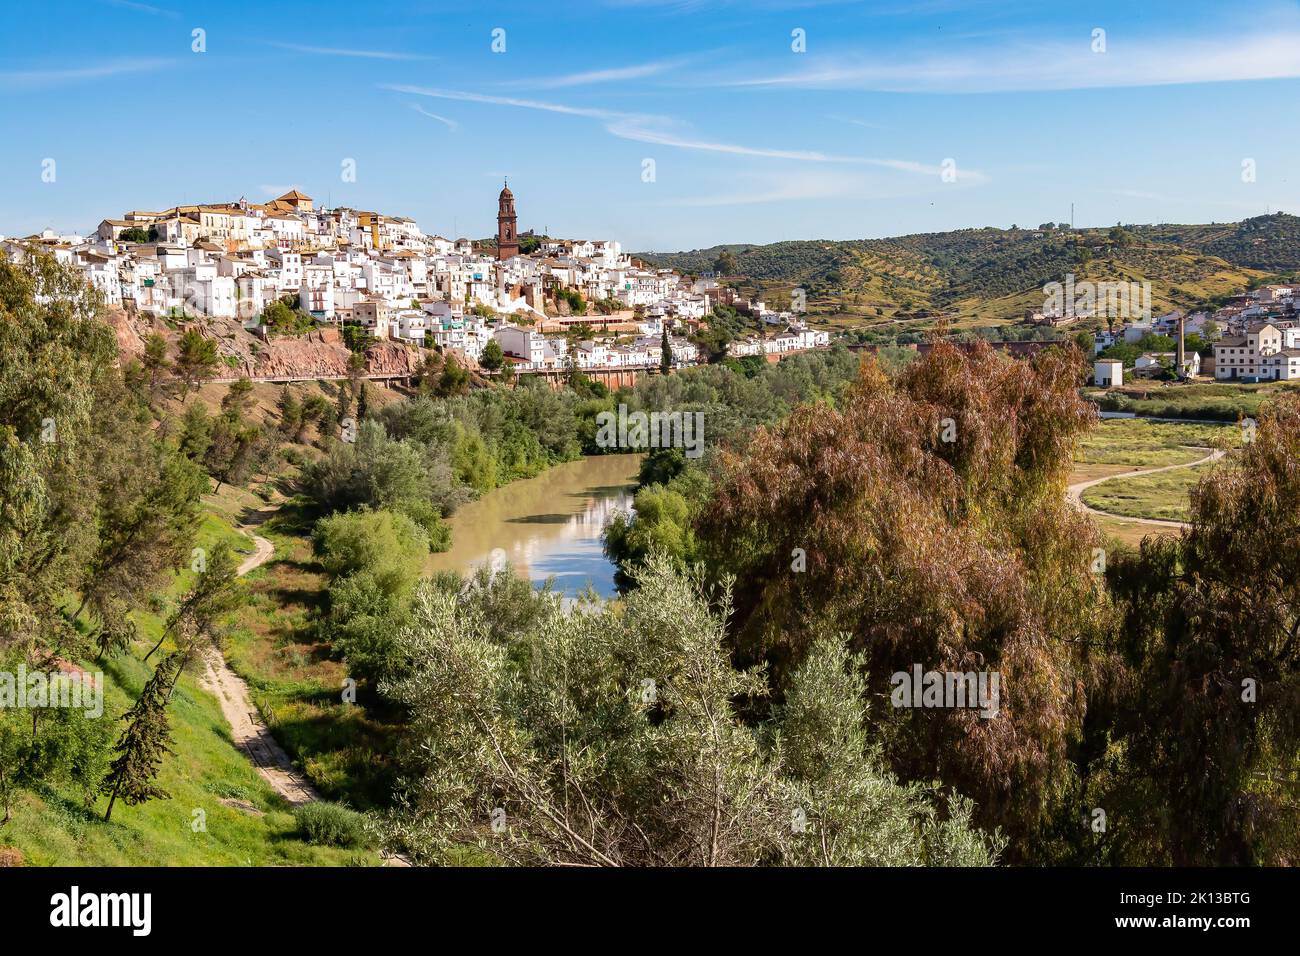 Vista del villaggio di Montoro, una città e un comune nella provincia di Cordoba, nel sud della Spagna, nella parte nord-centrale della comunità autonoma di A. Foto Stock